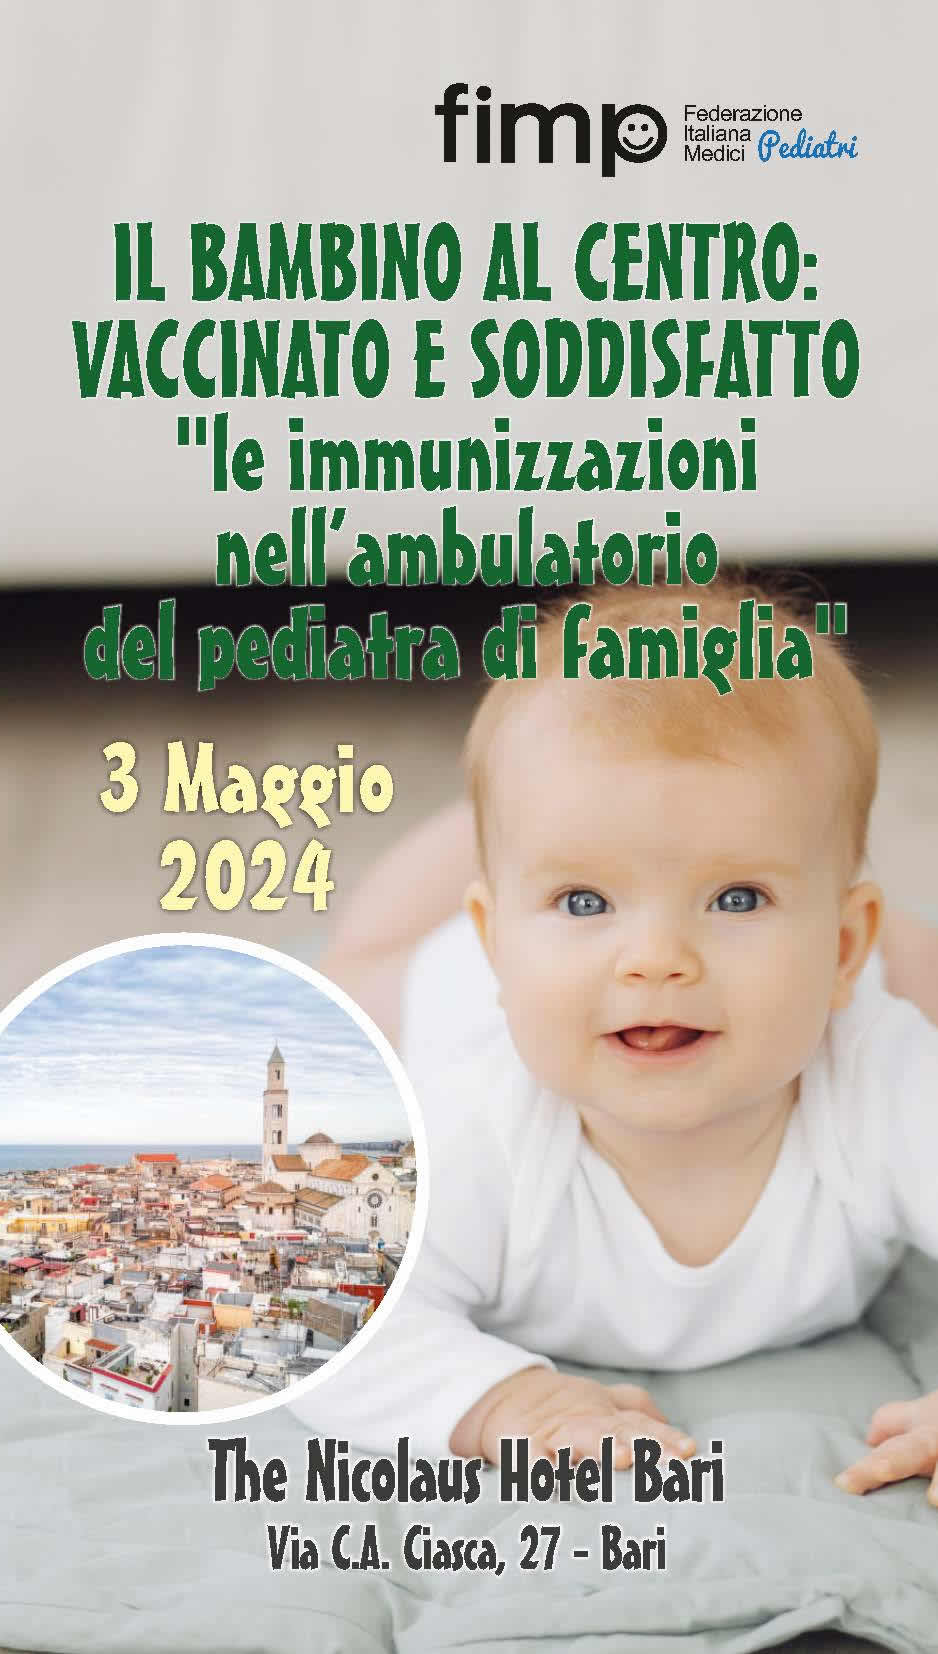 &quot;le immunizzazioni nell’ambulatorio del pediatra di famiglia&quot;